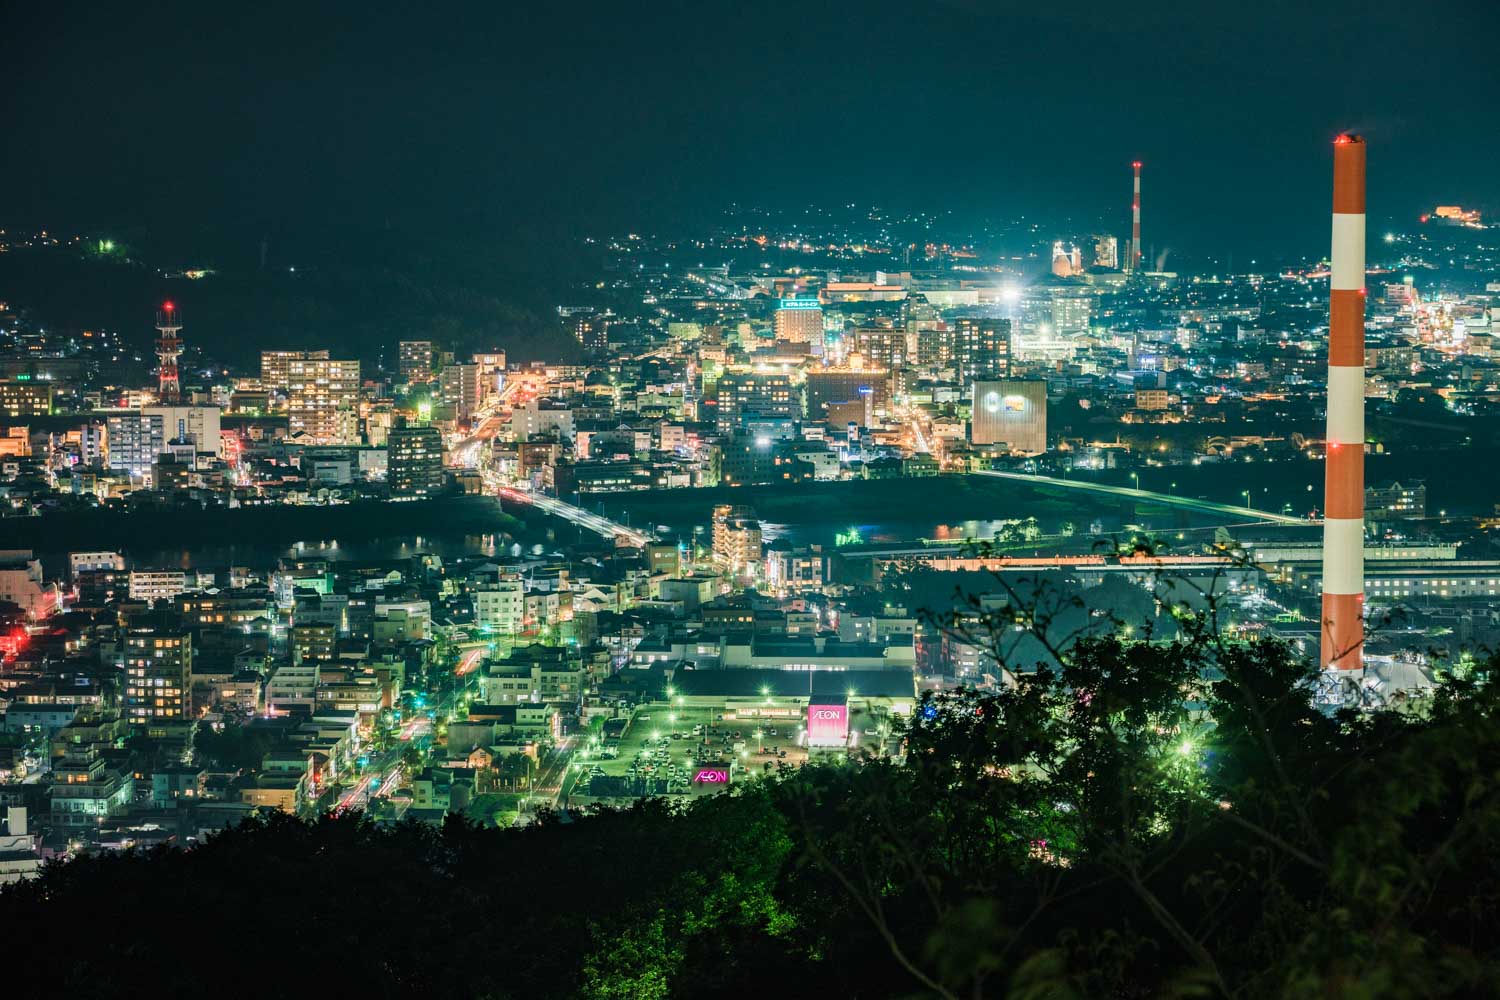 延岡　愛宕山から見た夜景